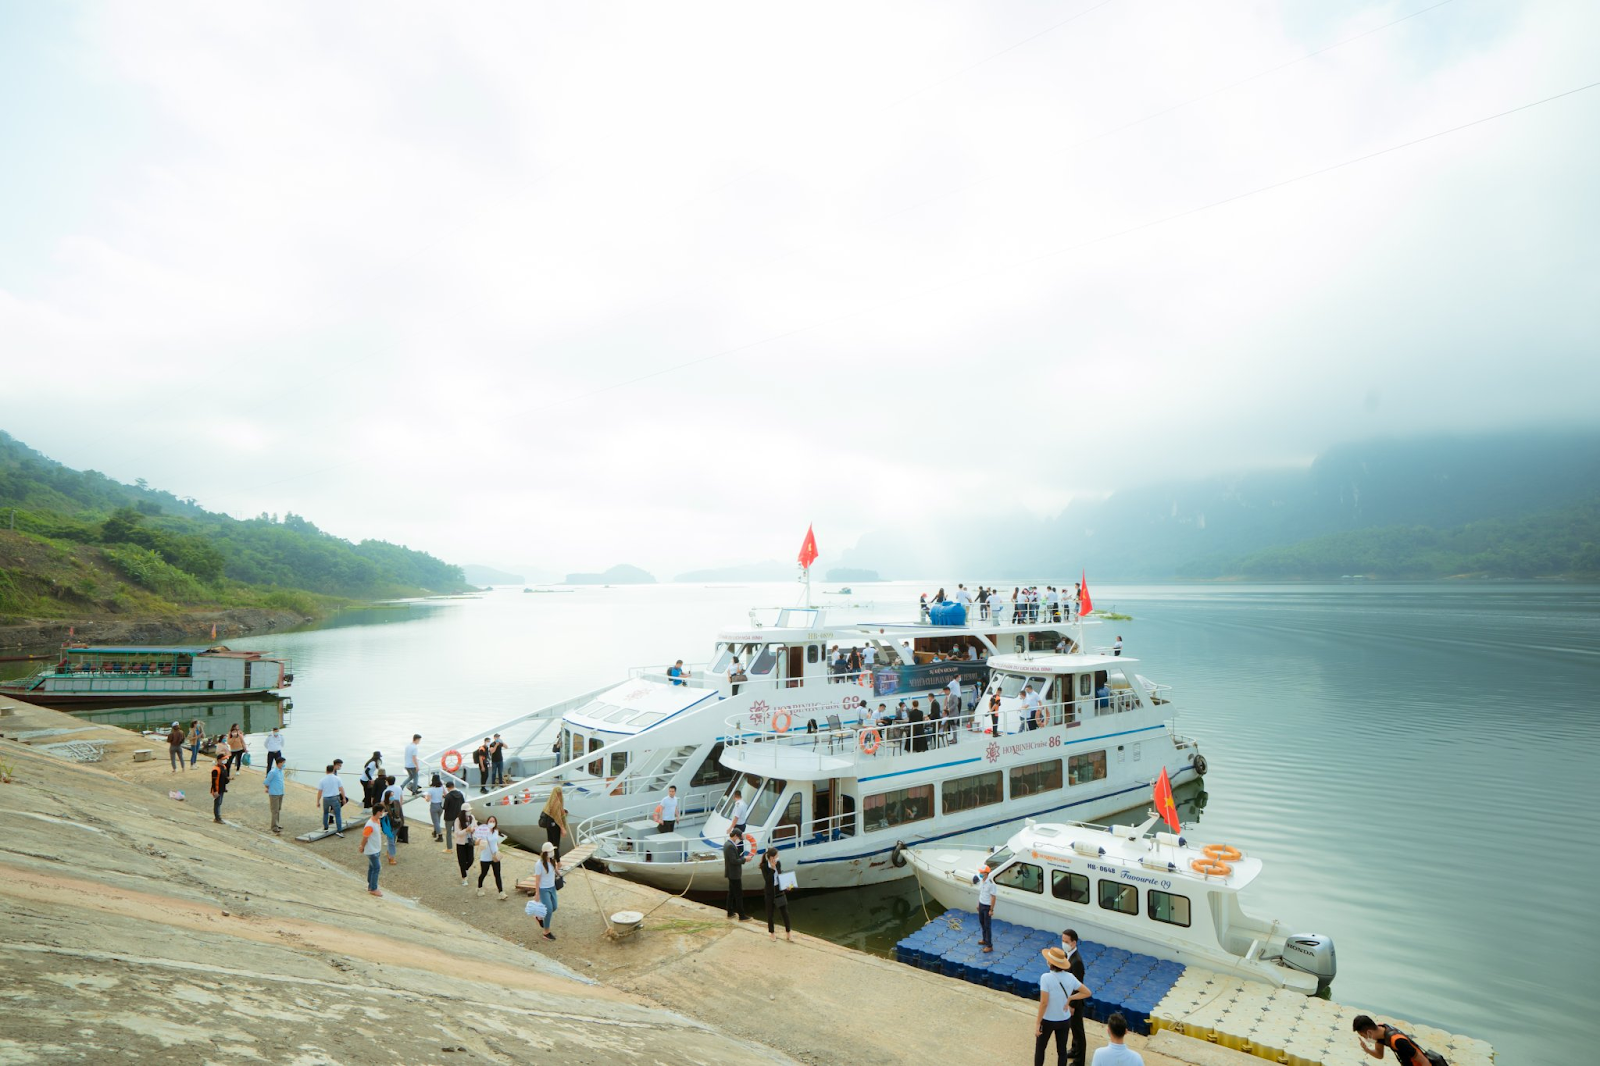 Tỉnh Hòa Bình ban hành thành lập Ban Chỉ đạo thực hiện Đề án phát triển Khu du lịch hồ Hoà Bình thành Khu du lịch quốc gia